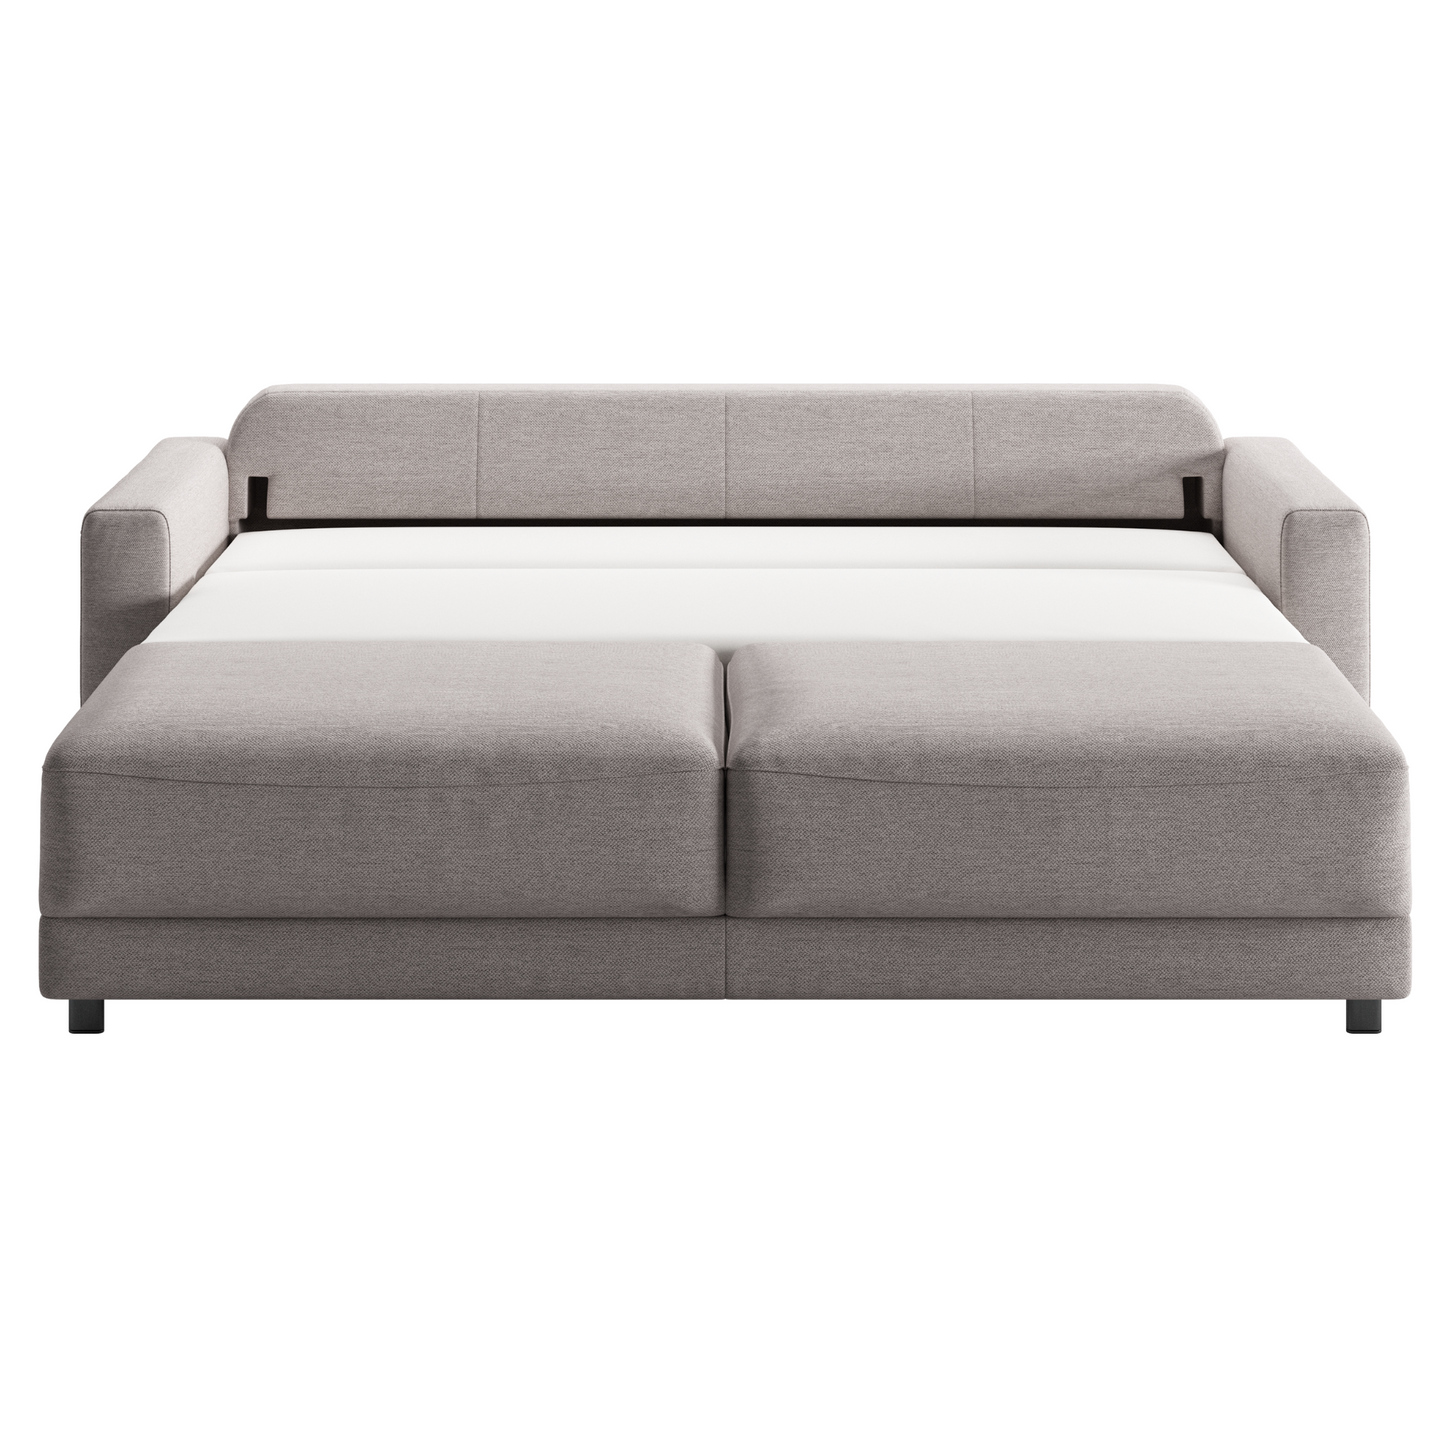 Luonto Belton King Sofa Sleeper with Level Mechanism